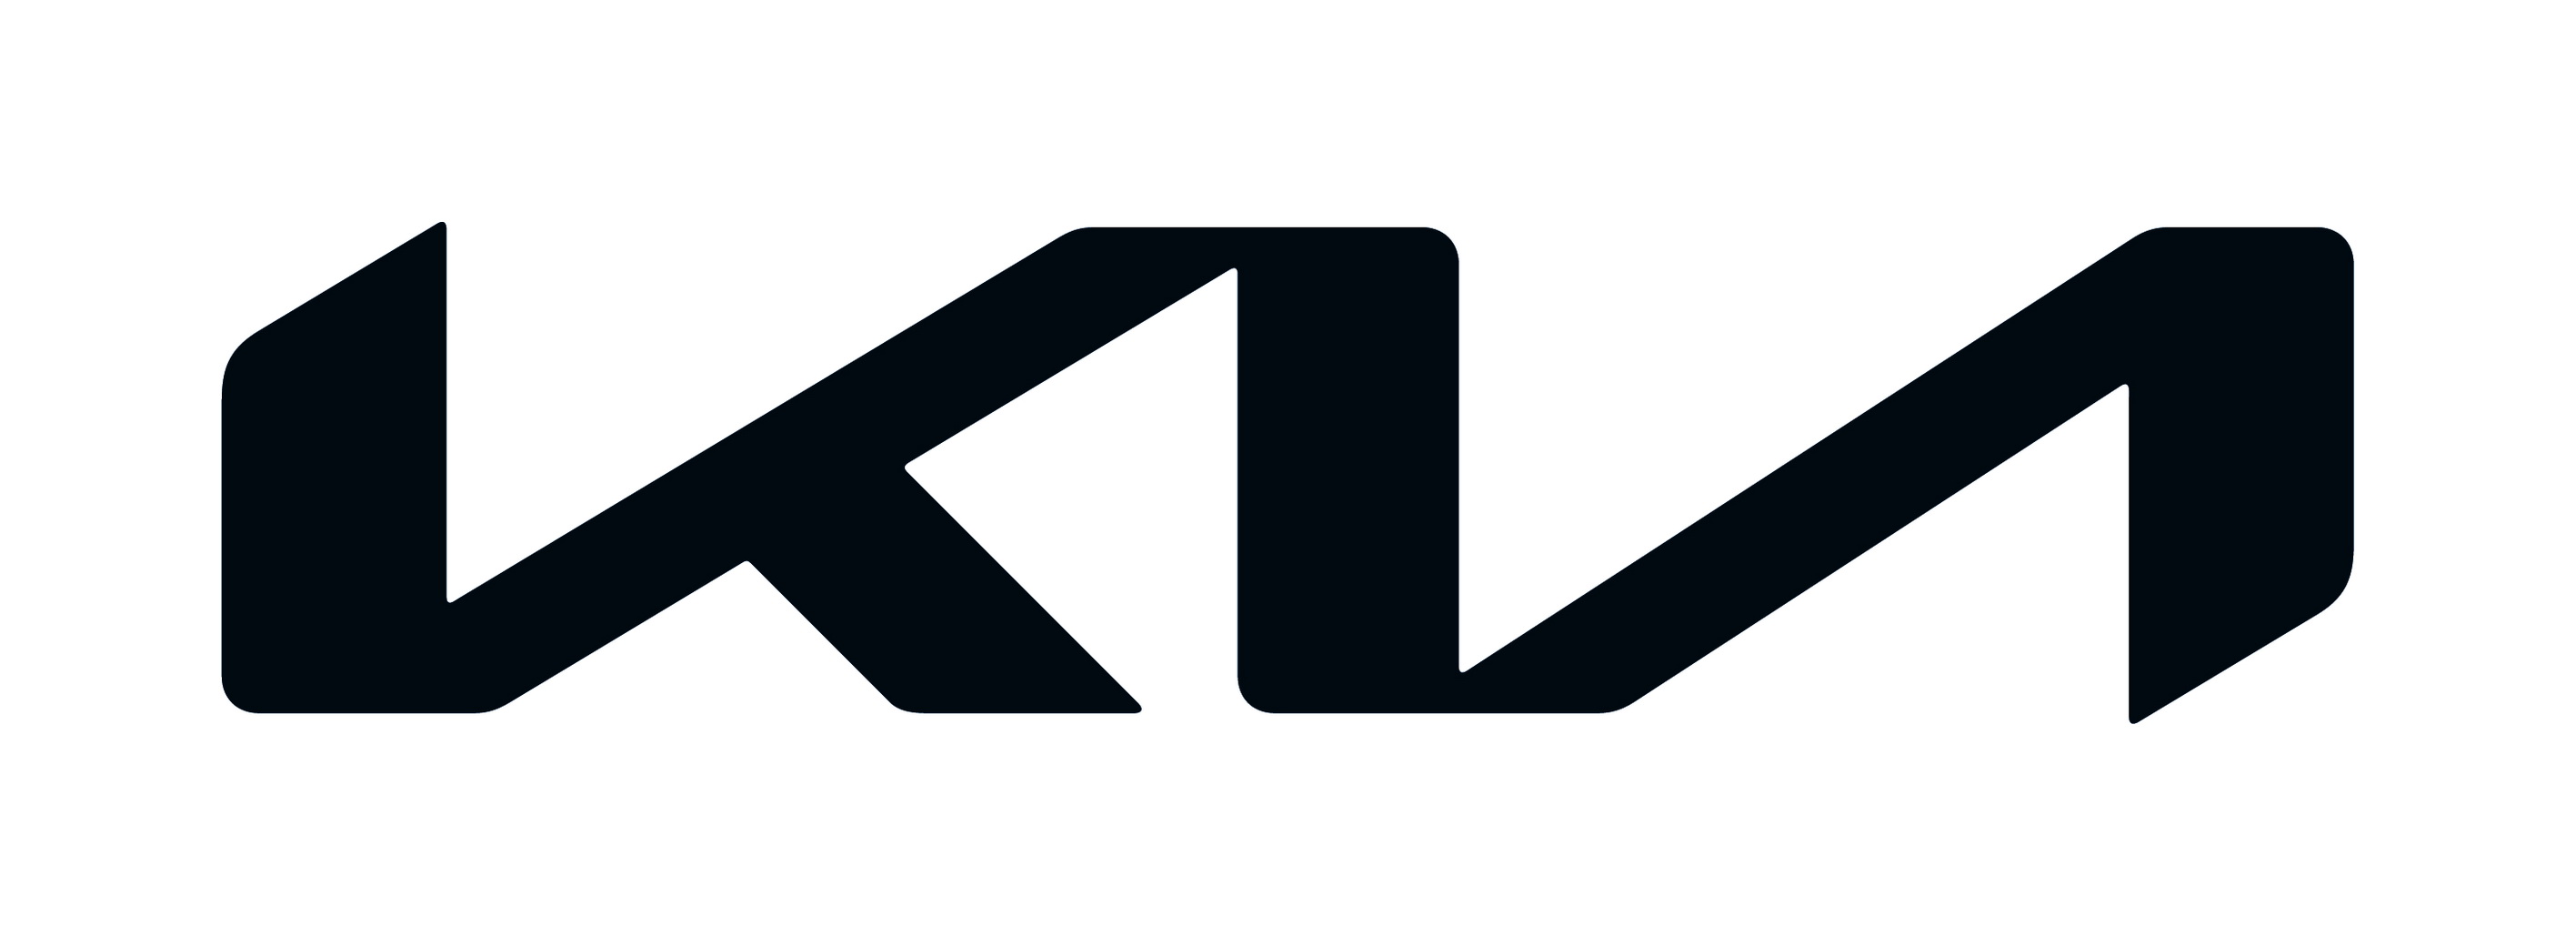 Kia chính thức giới thiệu logo và slogan mới kia-new-logo-2.jpg